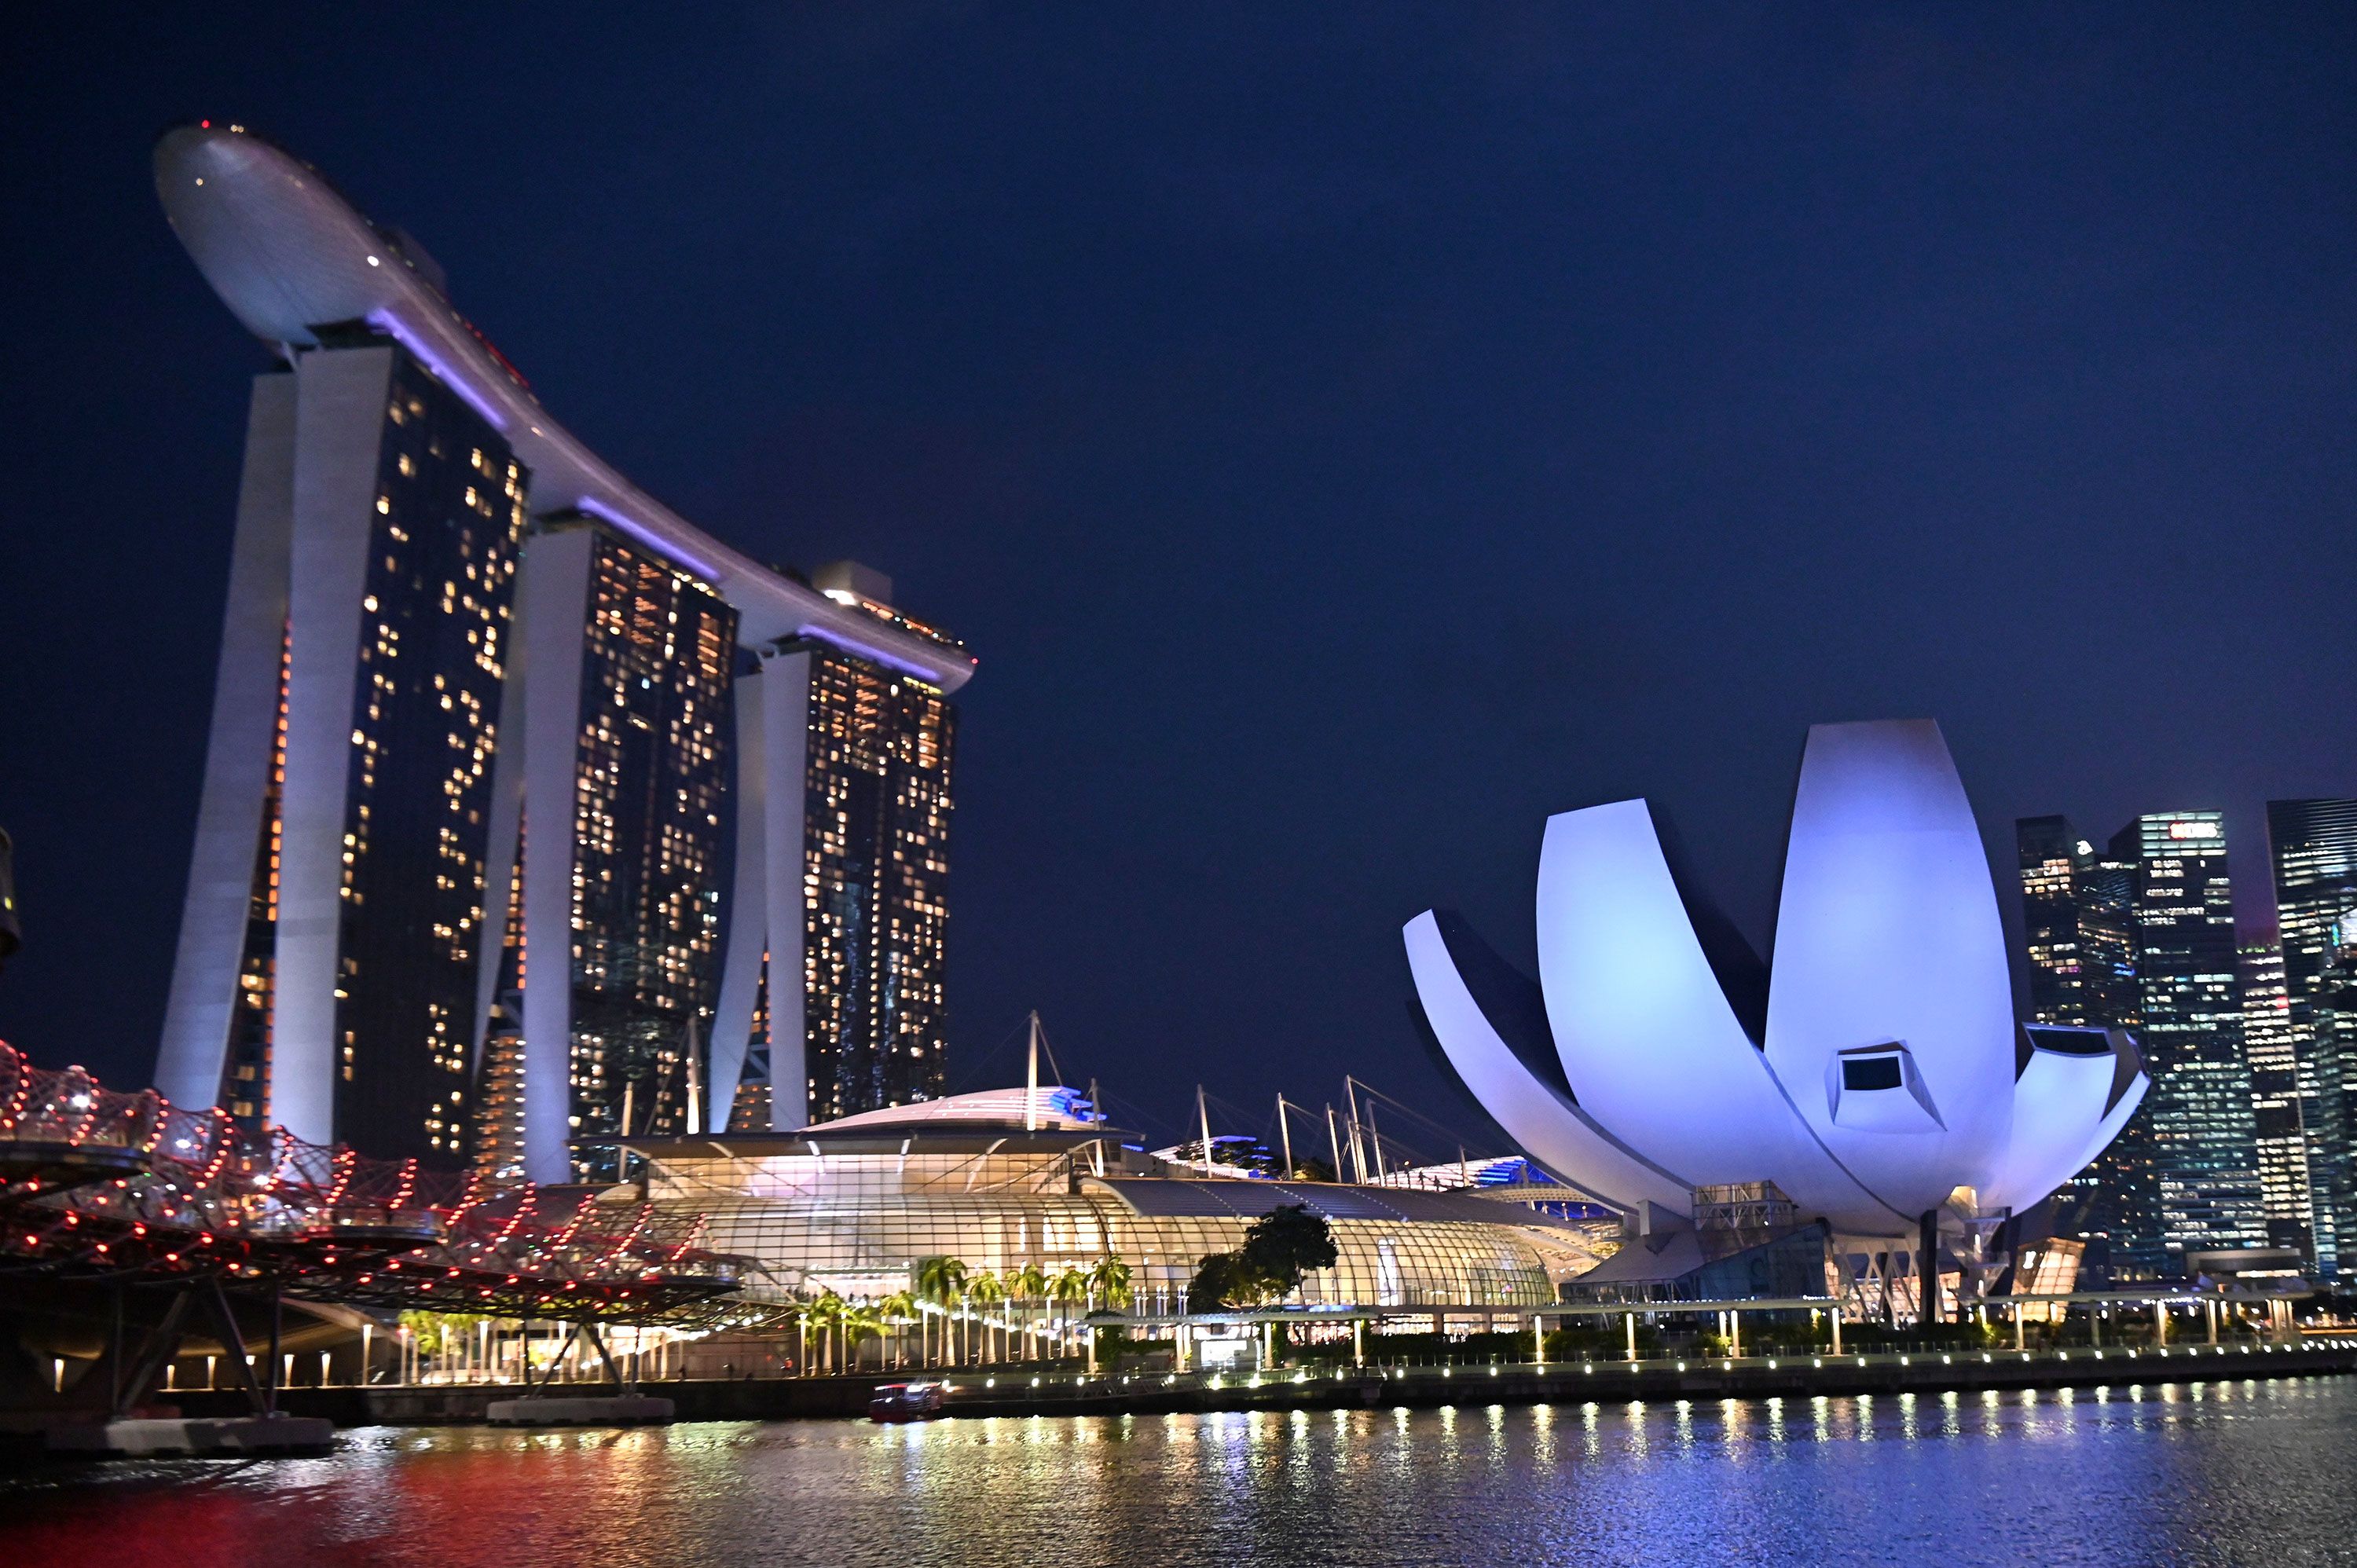 singapore architecture buildings